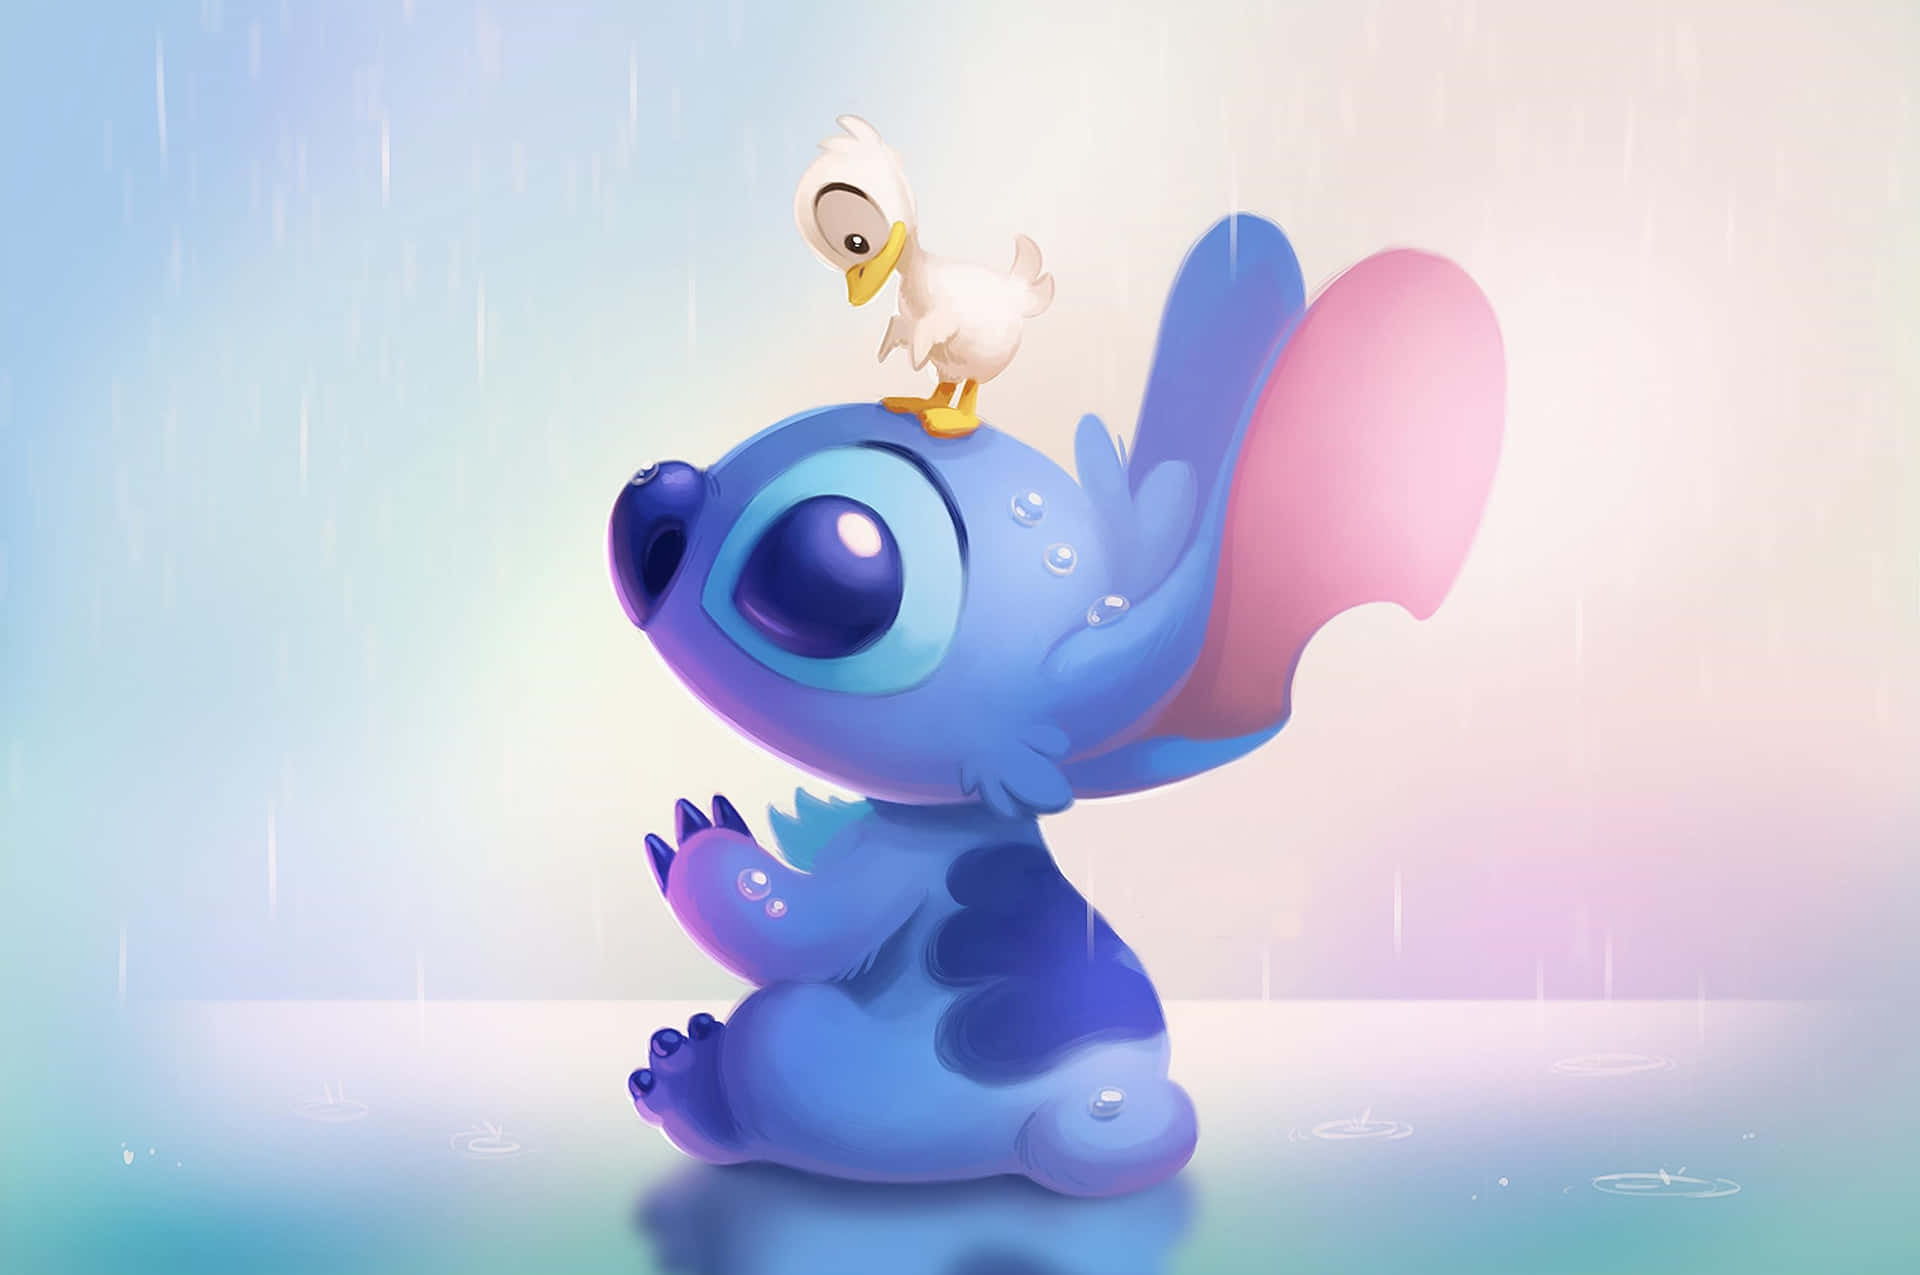 Disney prinsesser, som Aesthetic Stitch genskabt, vil bringe et touch af fantasi til din skærm. Wallpaper